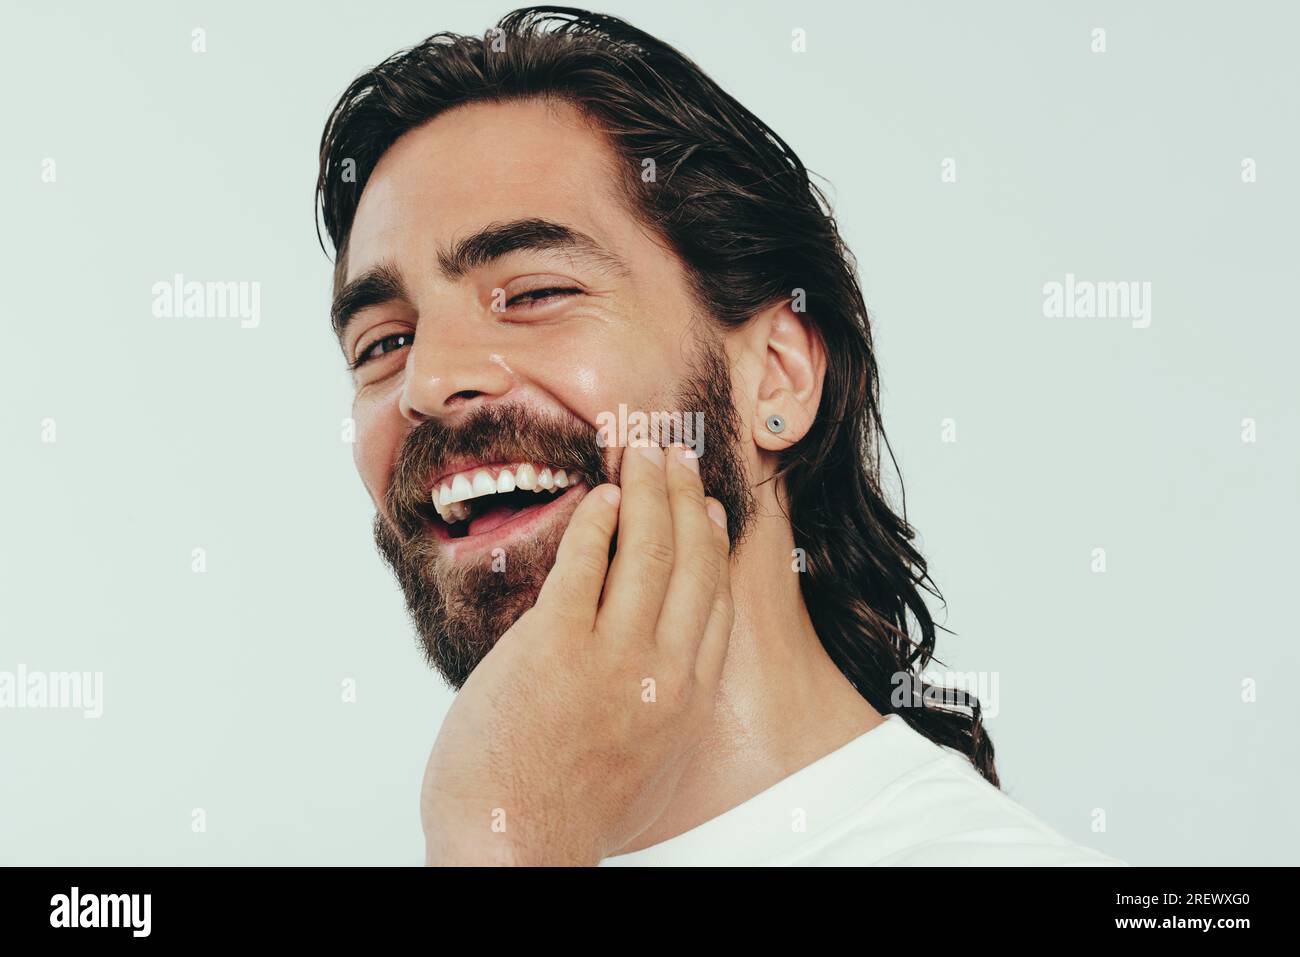 Ritratto di un giovane uomo felice sorridente in uno studio di registrazione, guardando la fotocamera con sicurezza mentre si sfreccia con orgoglio la barba, i capelli lunghi e la pelle radiosa. Uomo Foto Stock